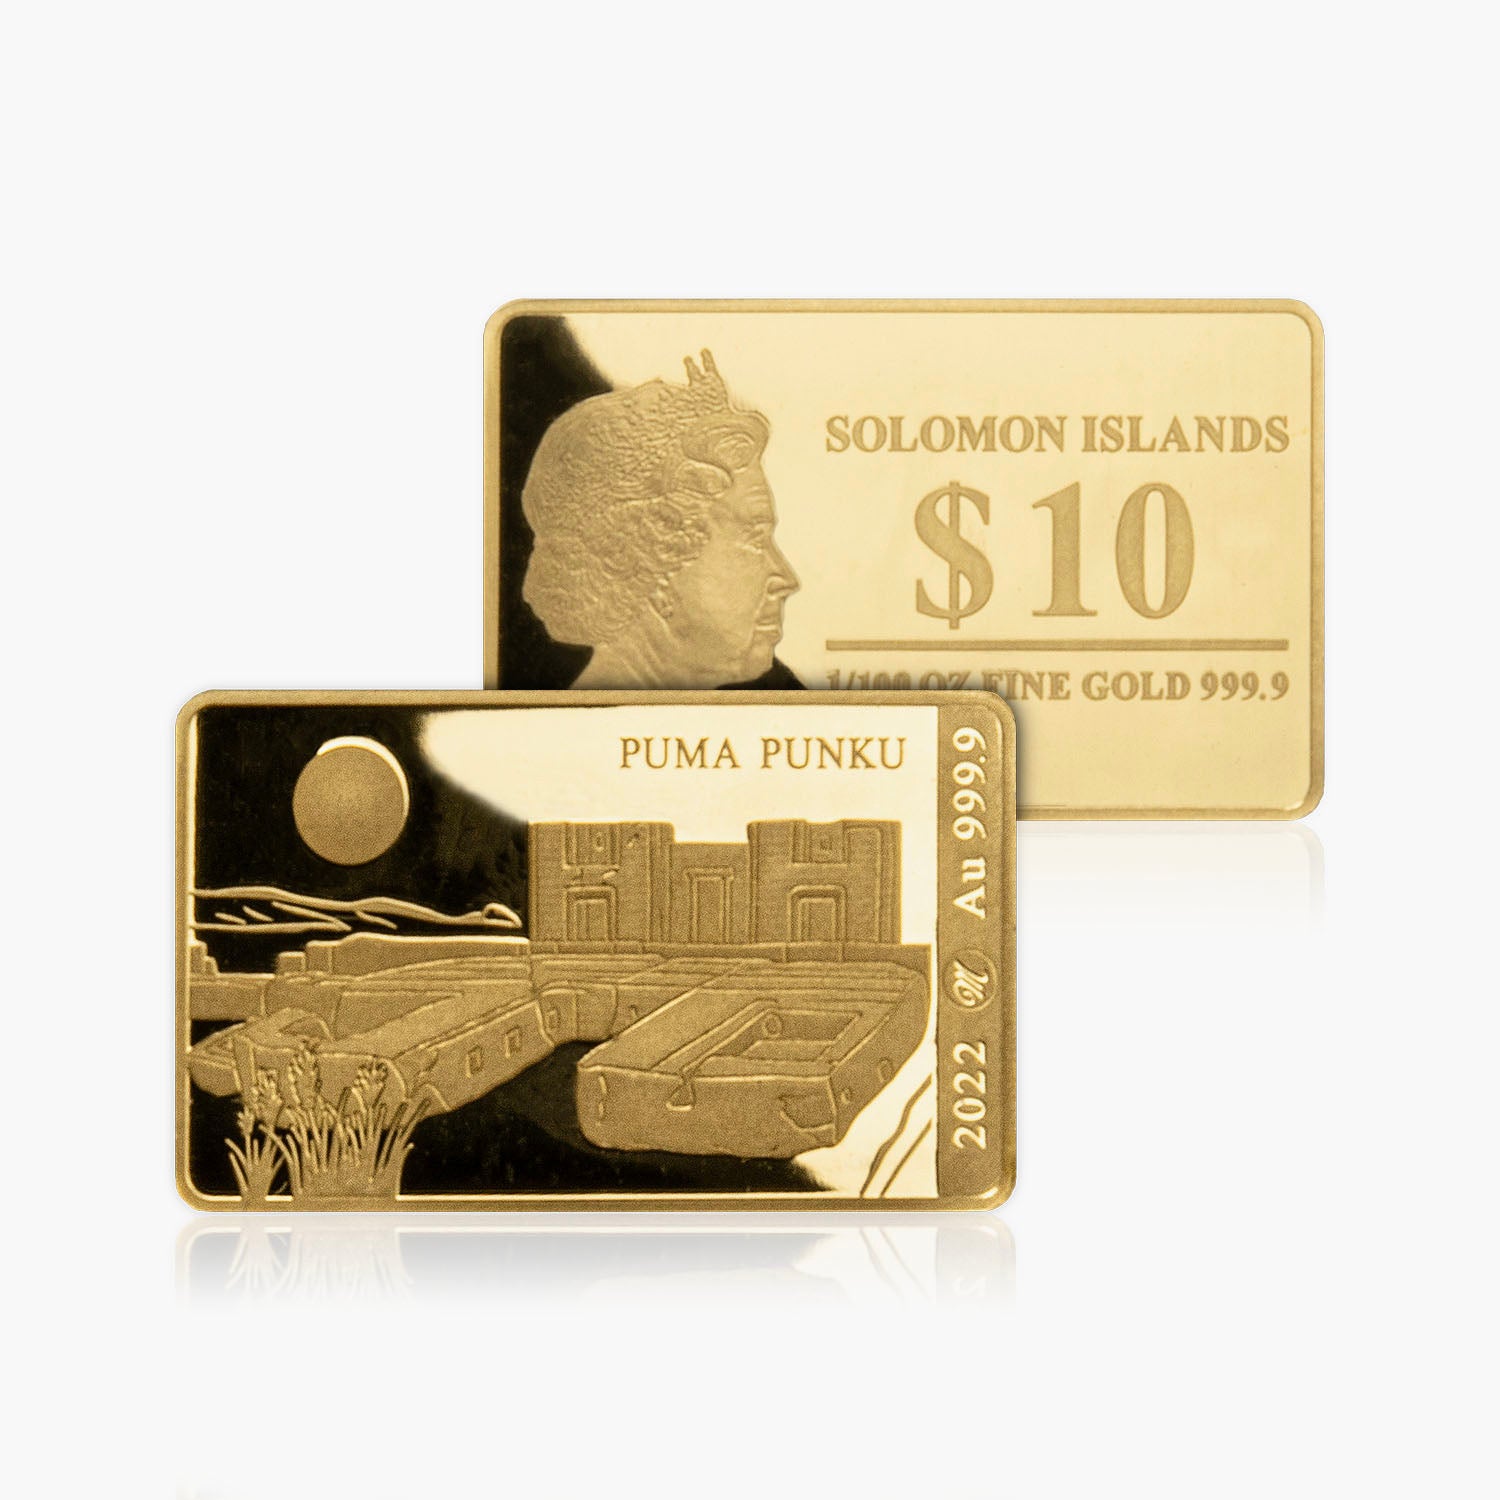 Puma Punku Gold Bar